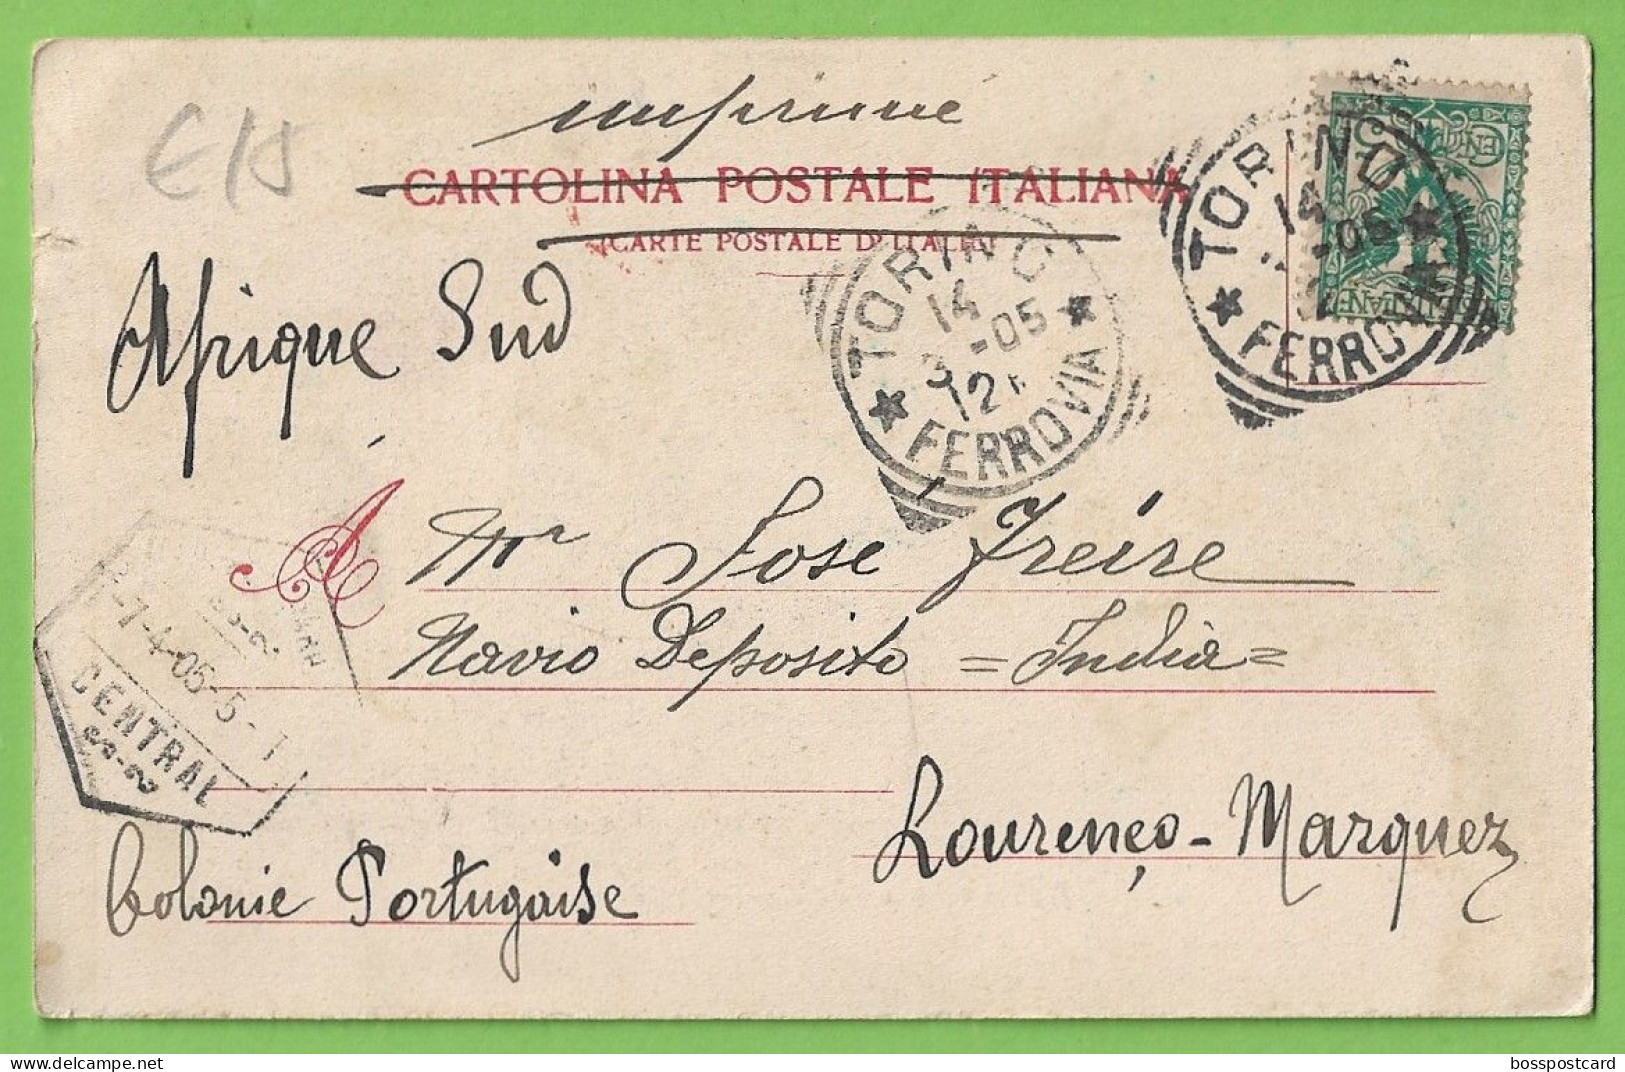 Torino - Turim - Riua Del Po E Castello Del Valentino - História Postal - Stamps - Timbres - Ferrovia - Italia - Castello Del Valentino